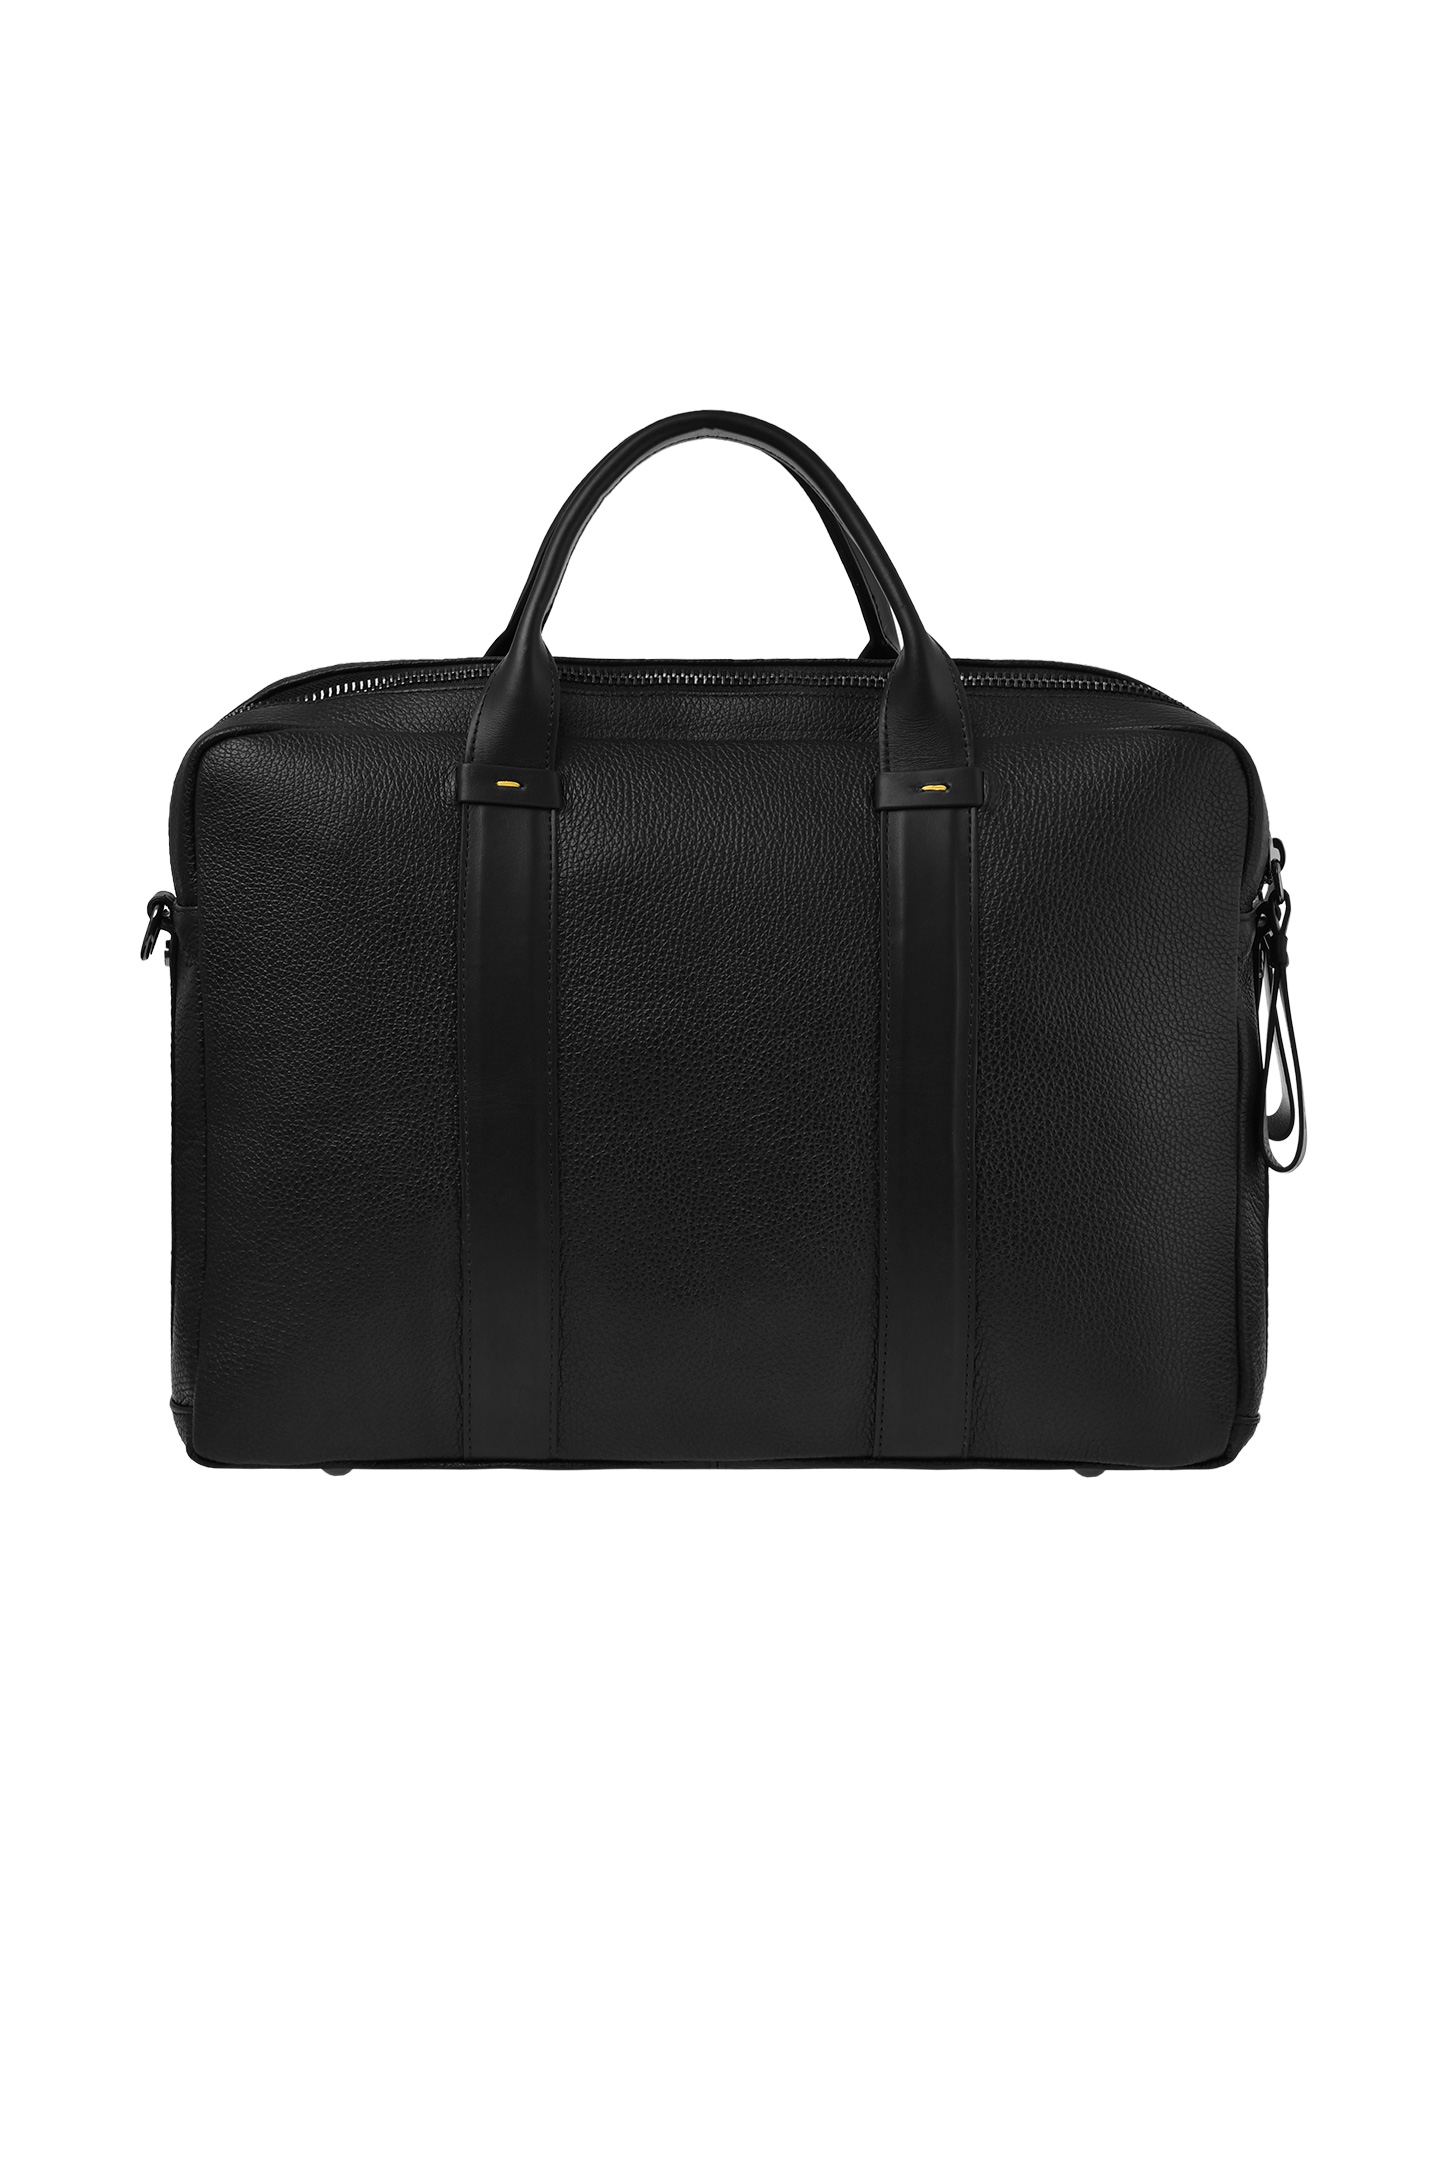 Кожаная сумка для ноутбука DOUCAL'S DB0005--02PT579, цвет: Черный, Мужской